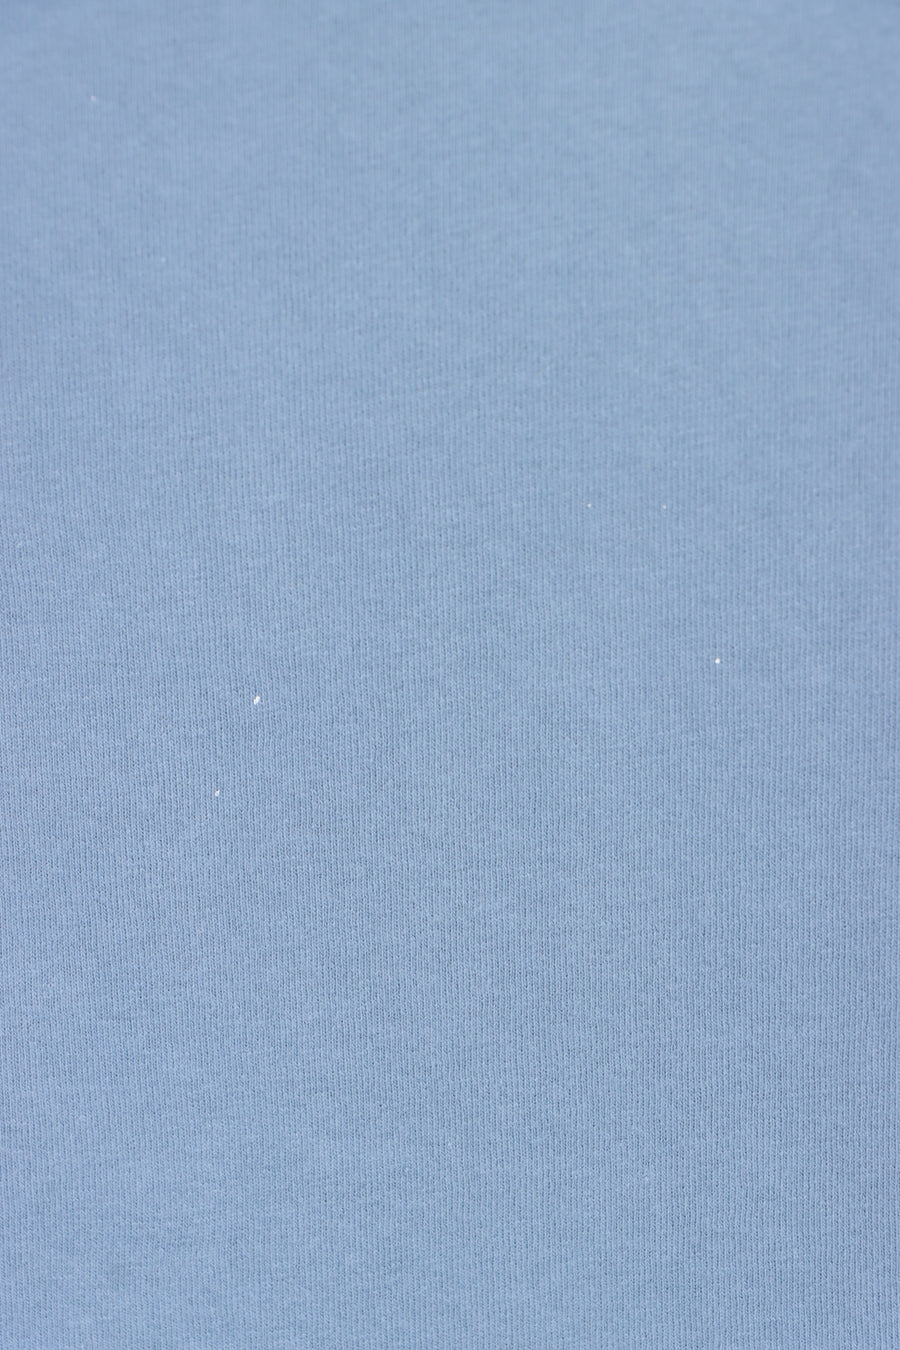 CARHARTT Muted Blue Casual Front Pocket T-Shirt (XL-XXL)